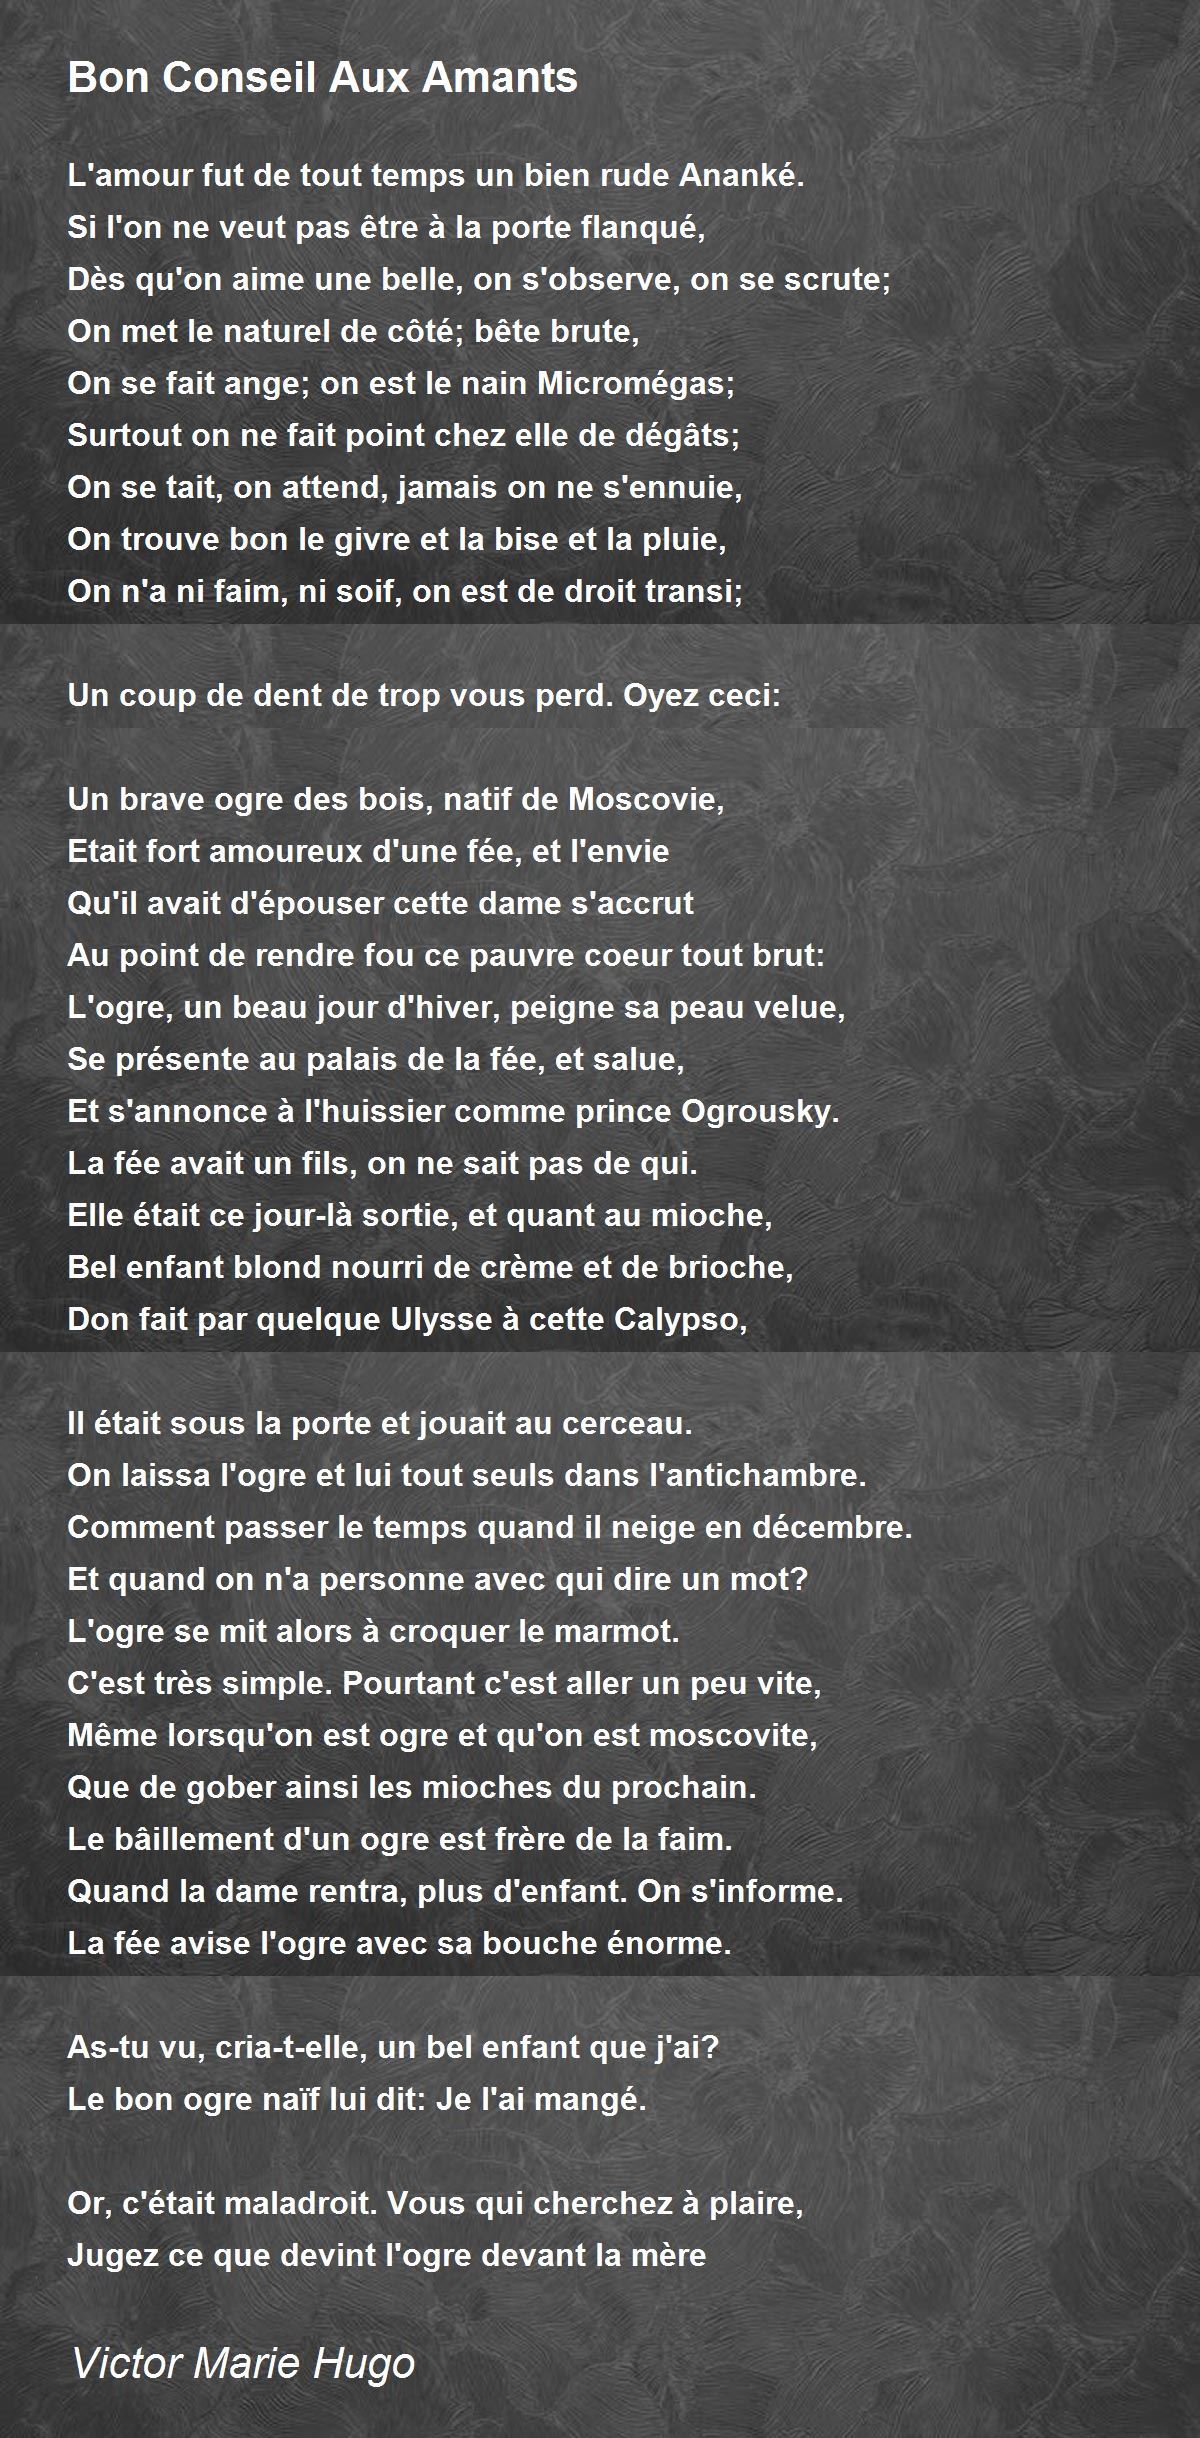 Bon Conseil Aux Amants Poem by Victor Marie Hugo - Poem Hunter Comments